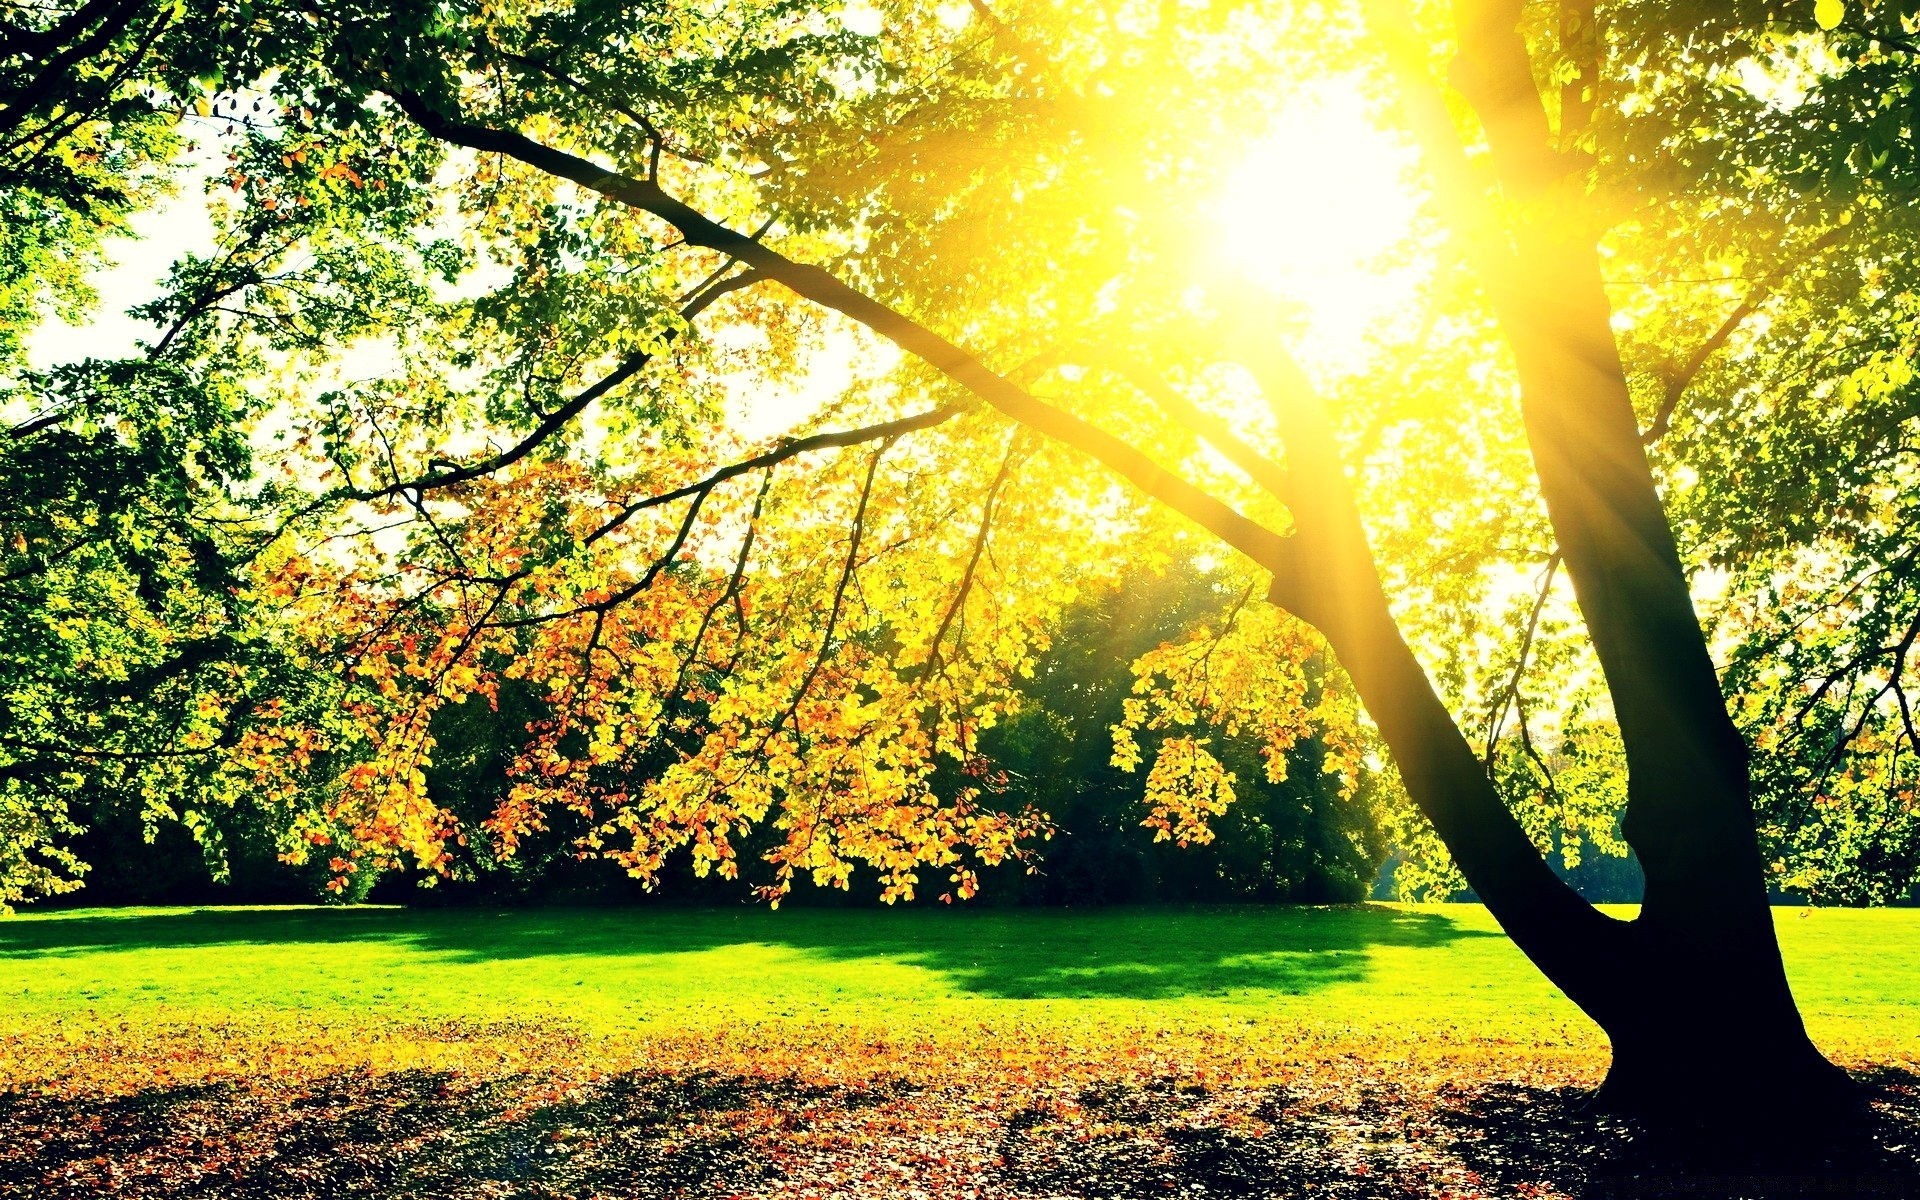 осень дерево древесины природа лист парк сезон солнце хорошую погоду пейзаж осень яркий рассвет пейзажи трава сельских лето сельской местности живописный на открытом воздухе сцена